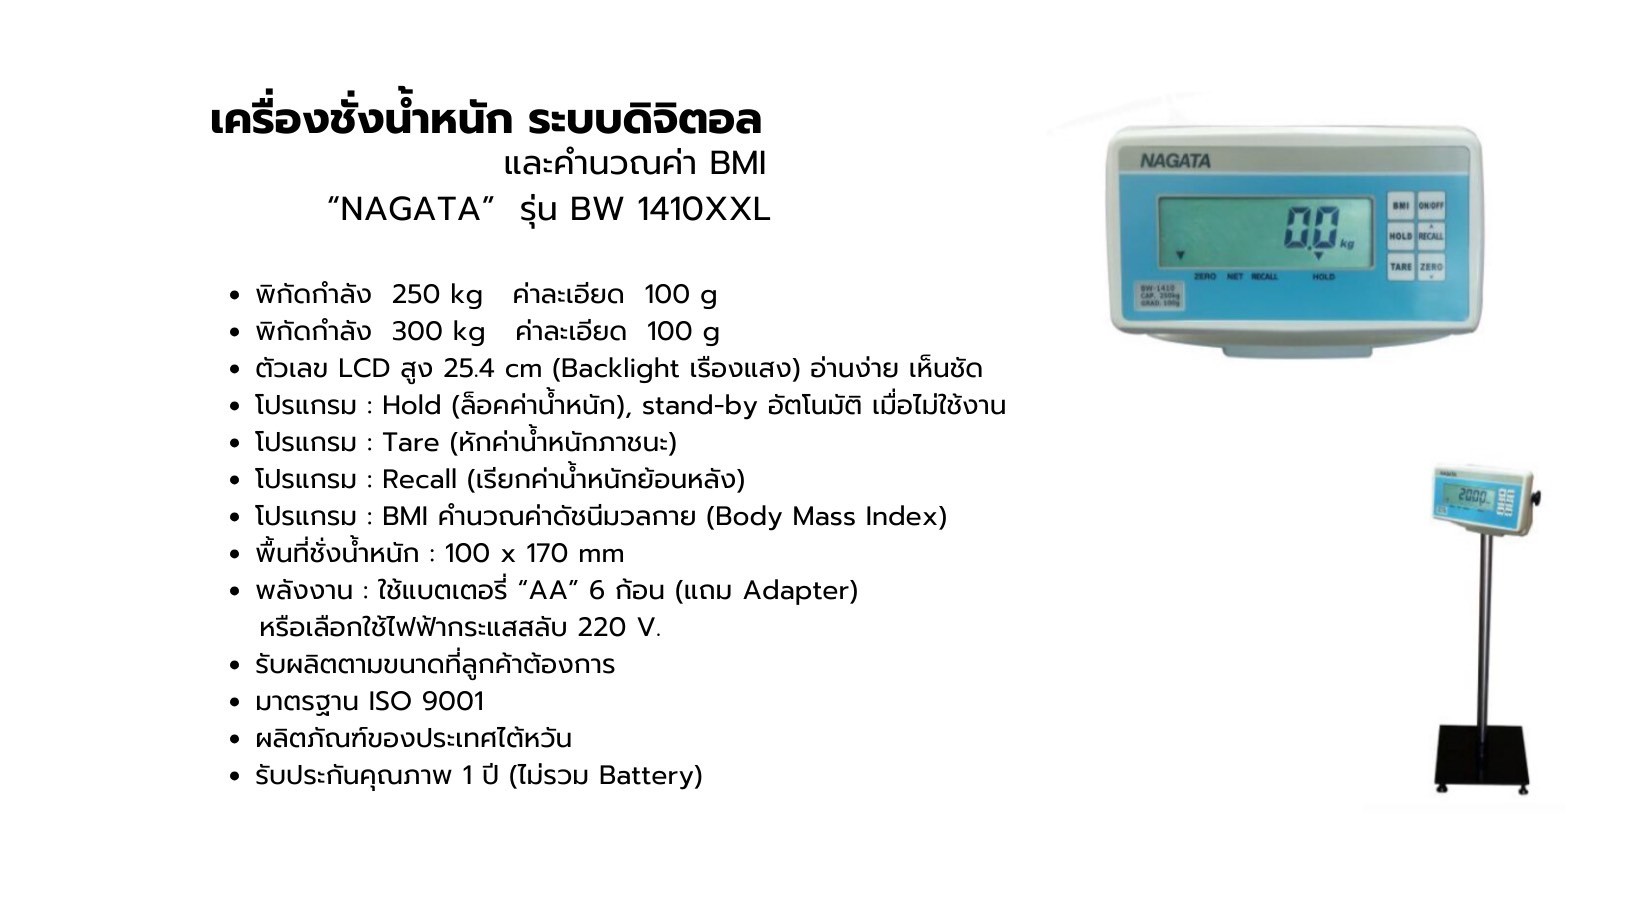 เครื่องชั่งน้ำหนัก ระบบดิจิตอล และคำนวณค่า BMI NAGATA รุ่น BW 1410XXL